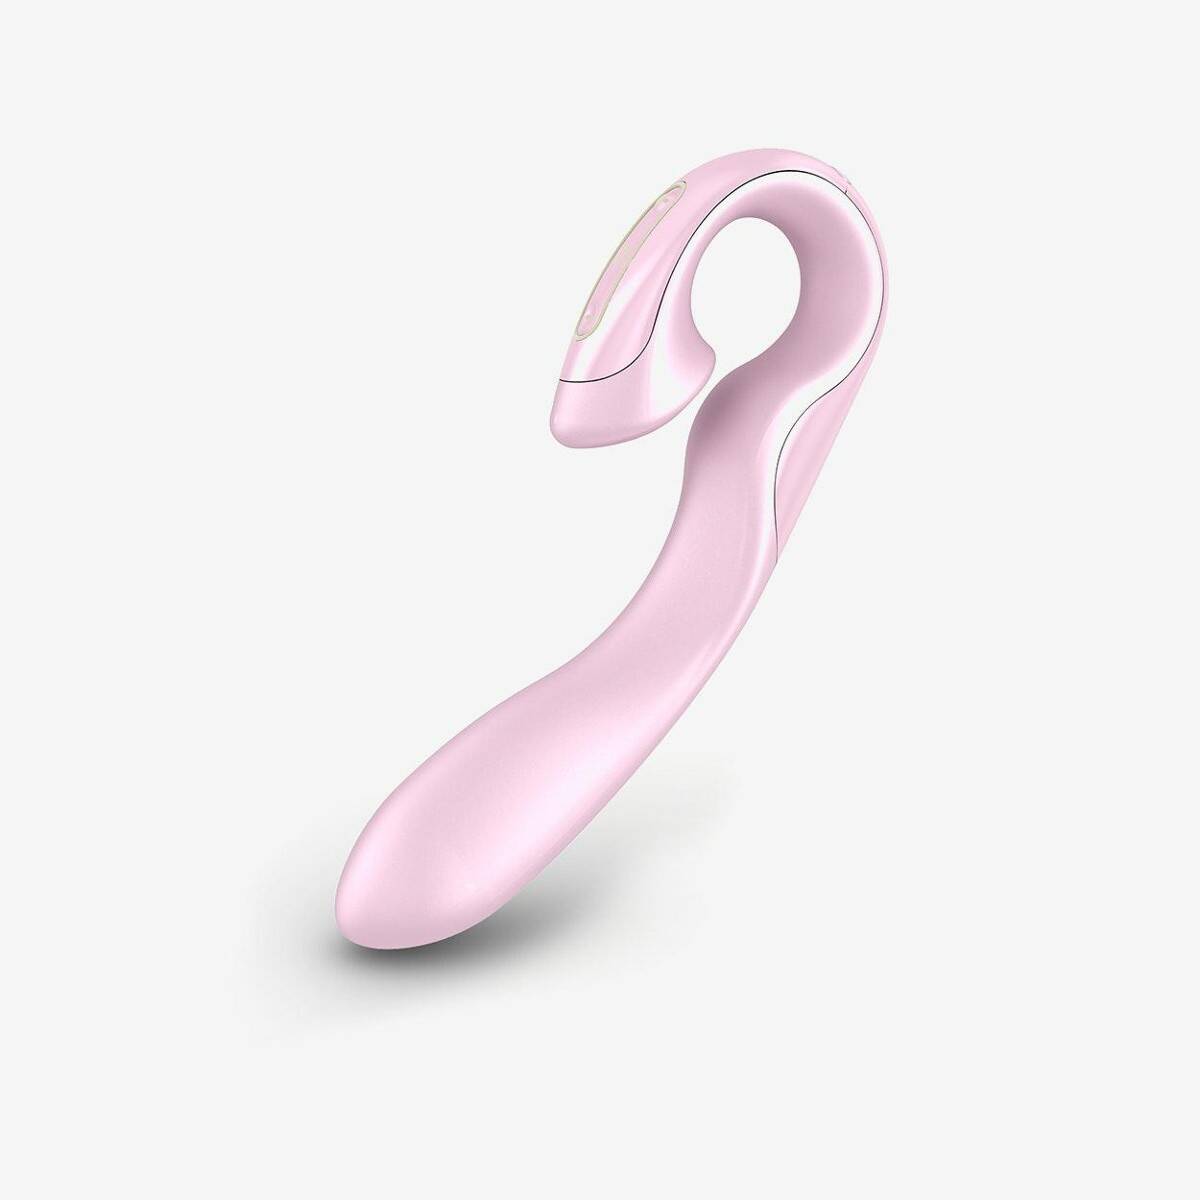 Zini - Roae Pink. Luxury Vibrator